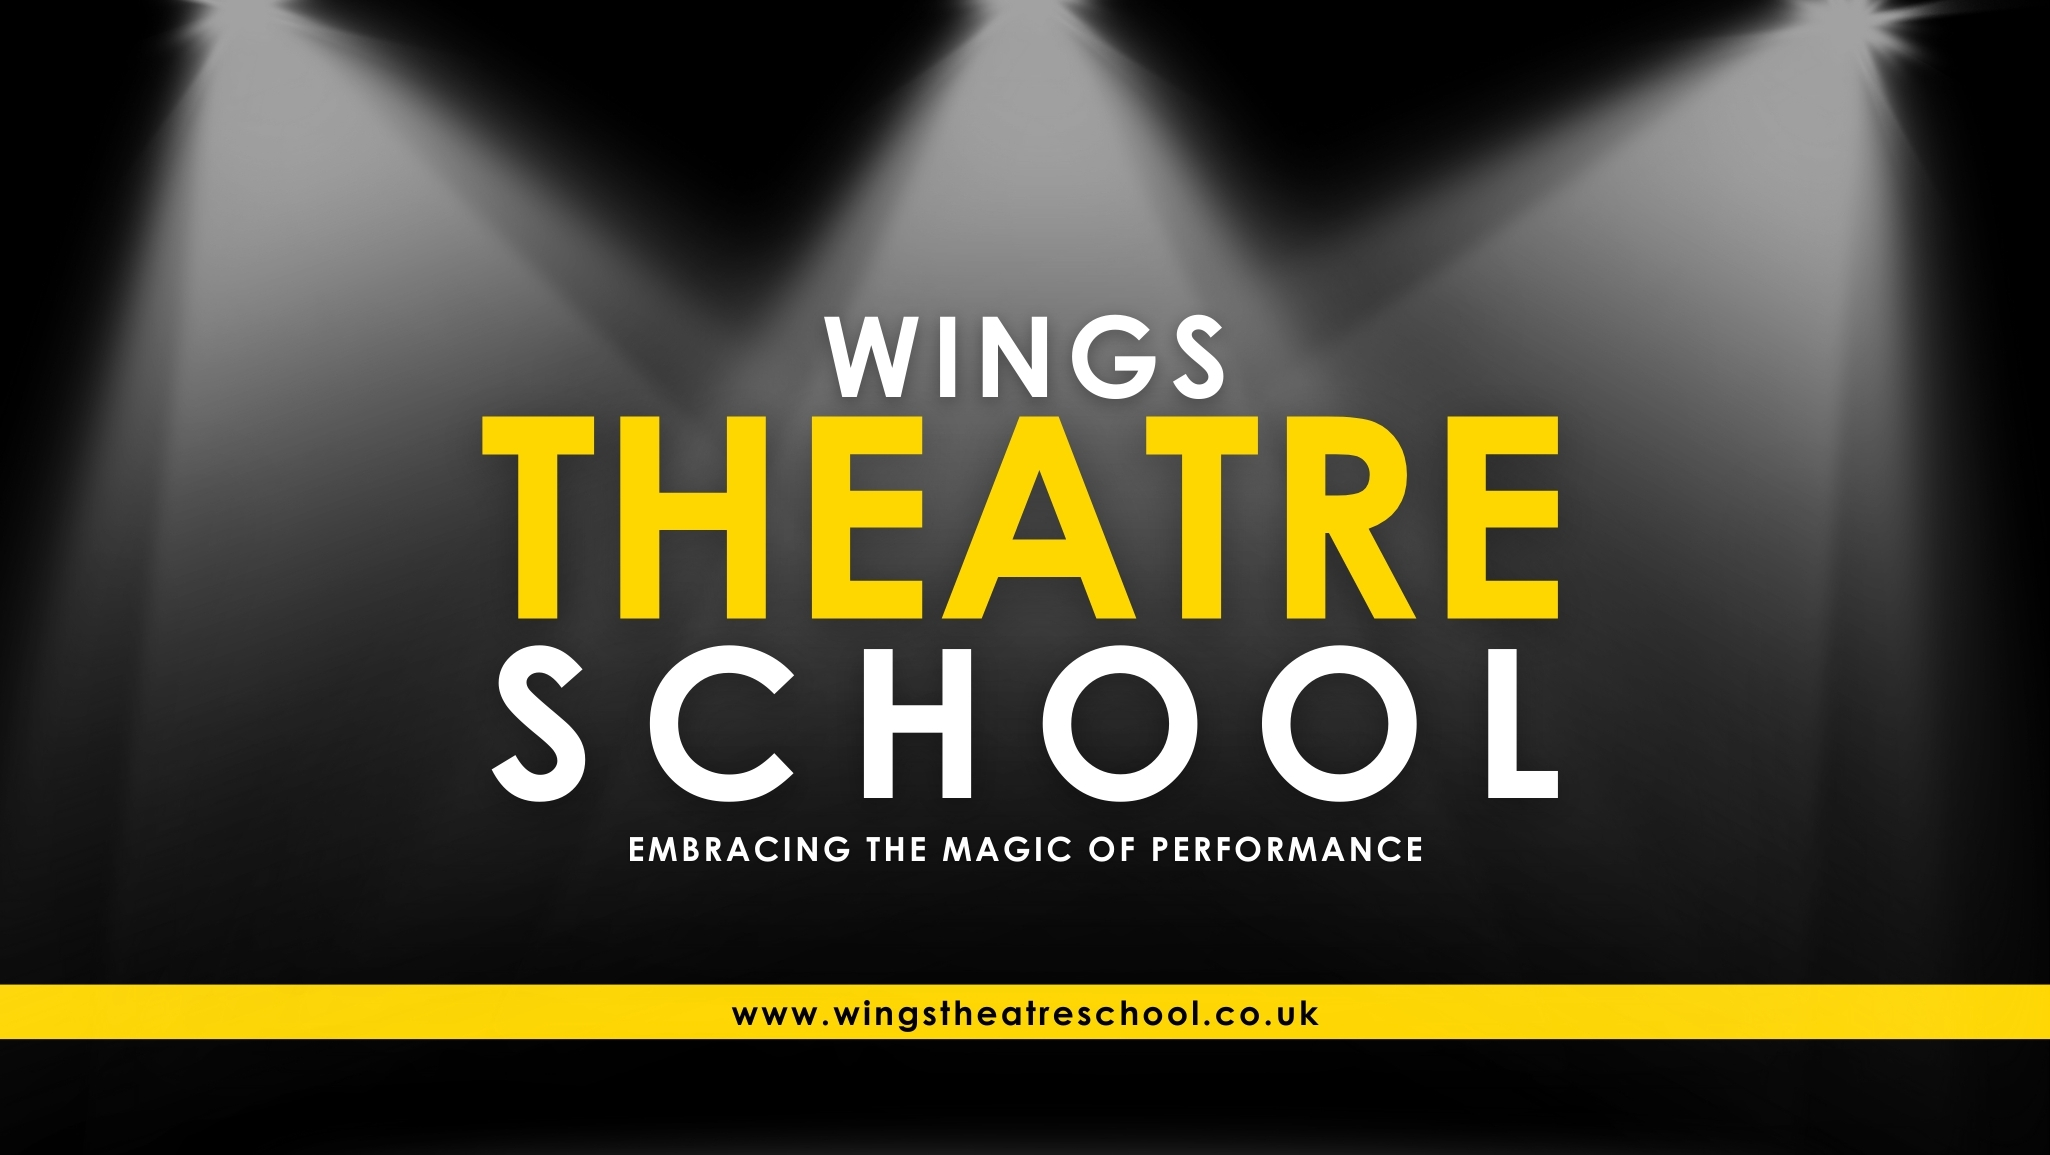 Wings Theatre School